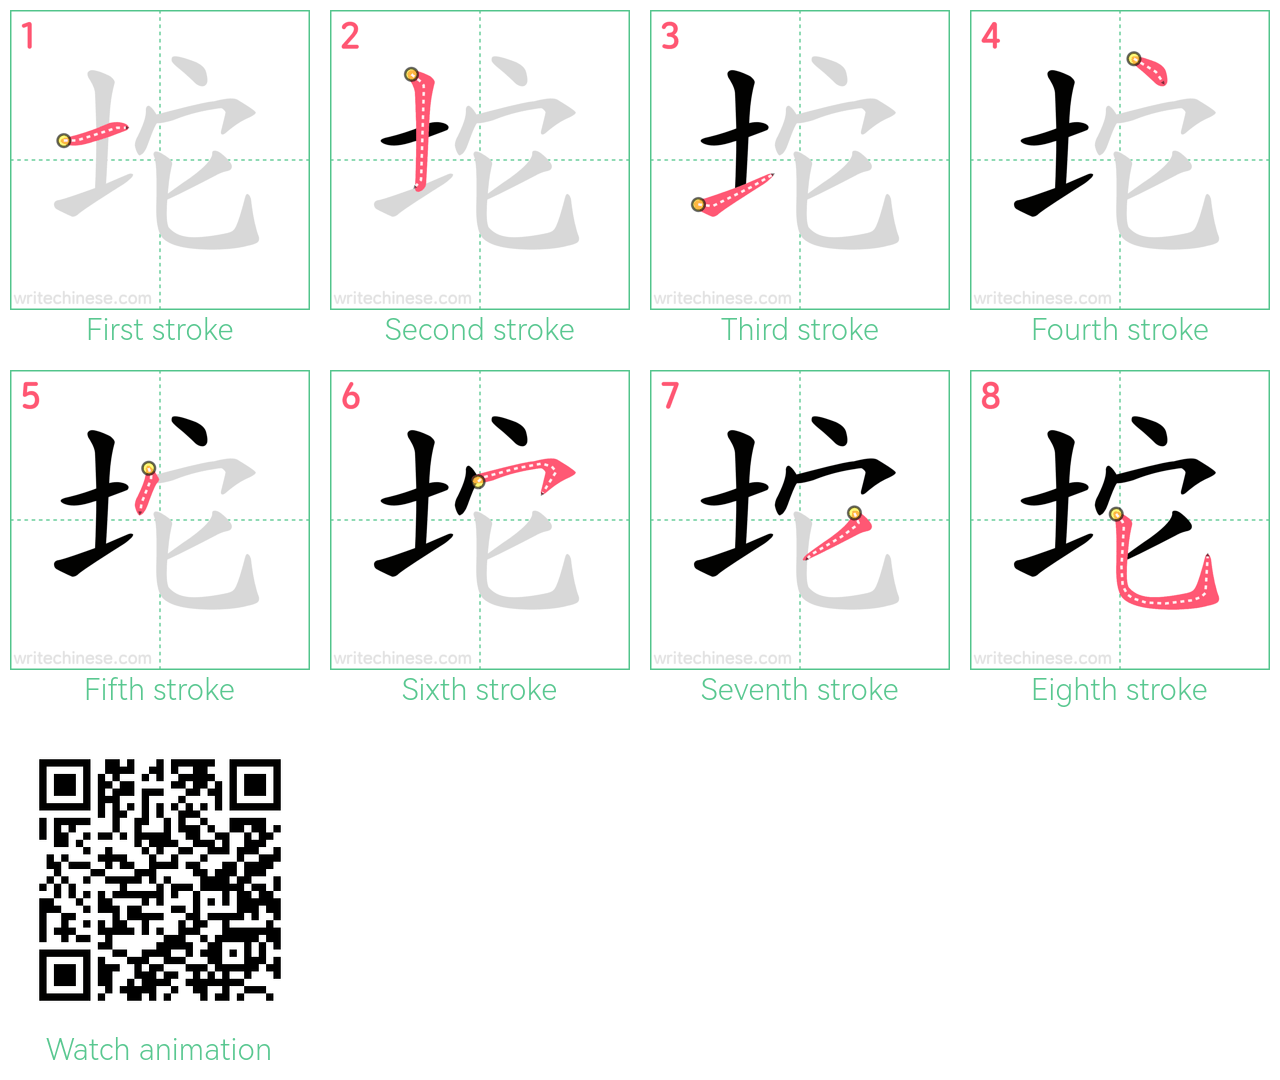 坨 step-by-step stroke order diagrams